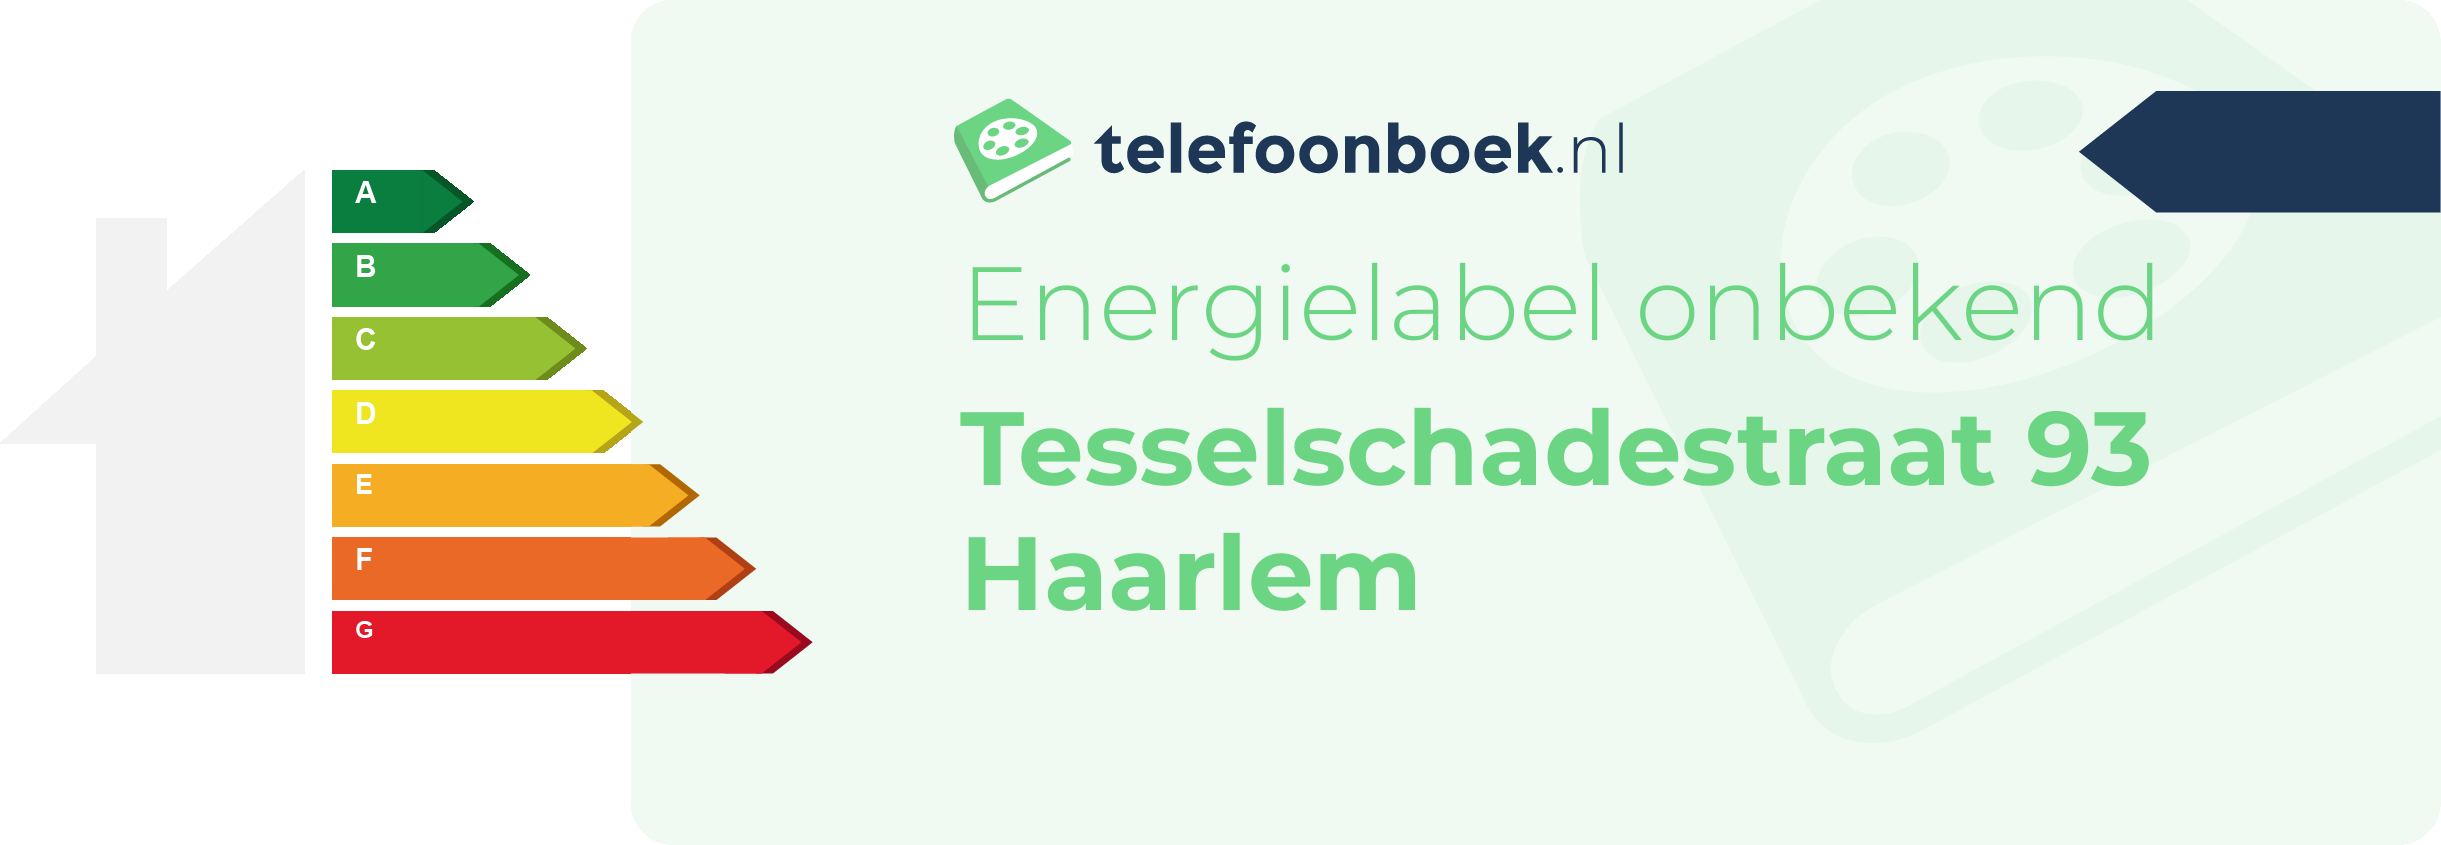 Energielabel Tesselschadestraat 93 Haarlem